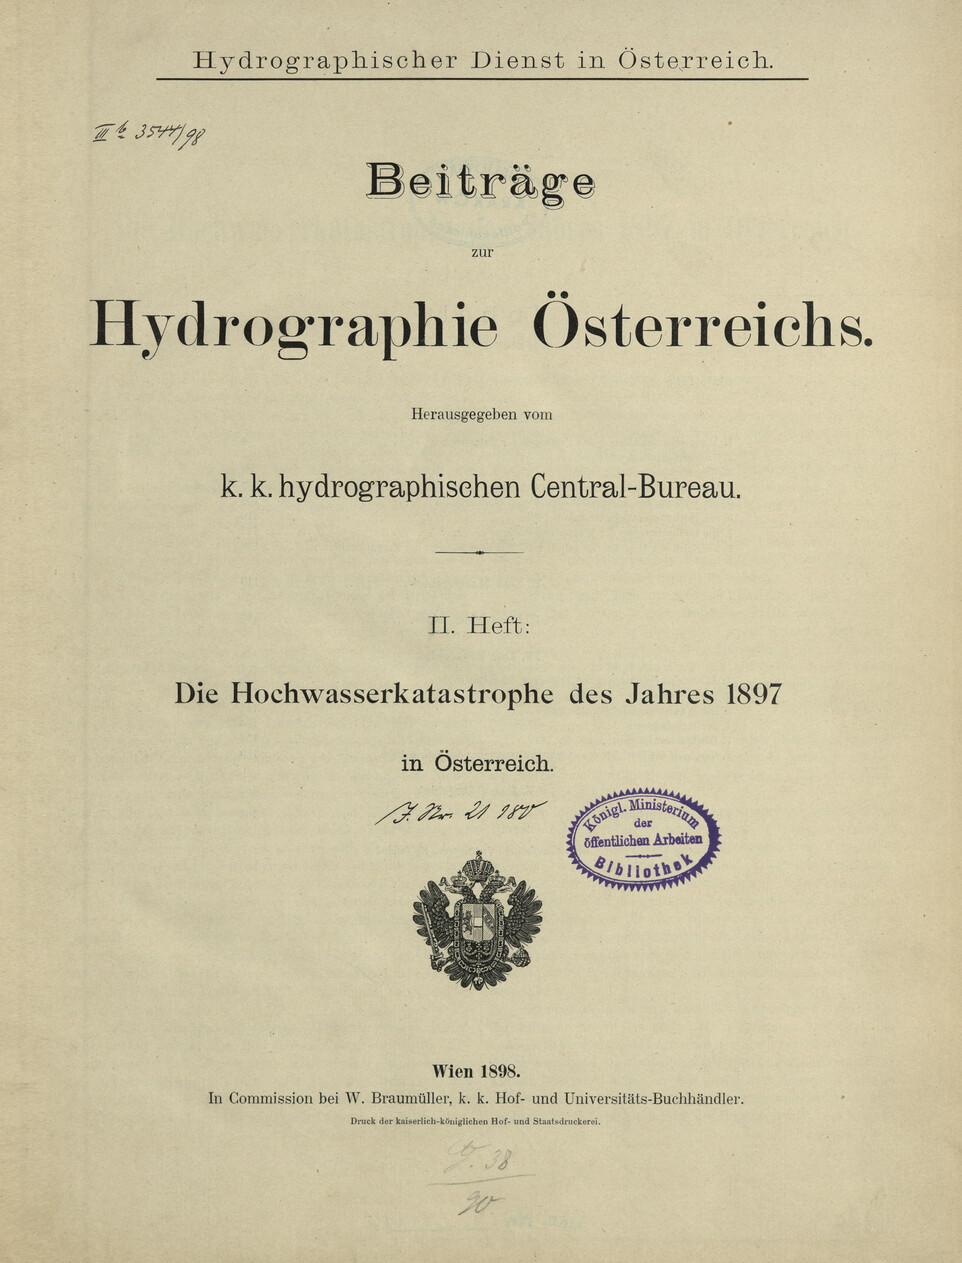 Die Hochwasserkatastrophe des Jahres 1897 in Österreich